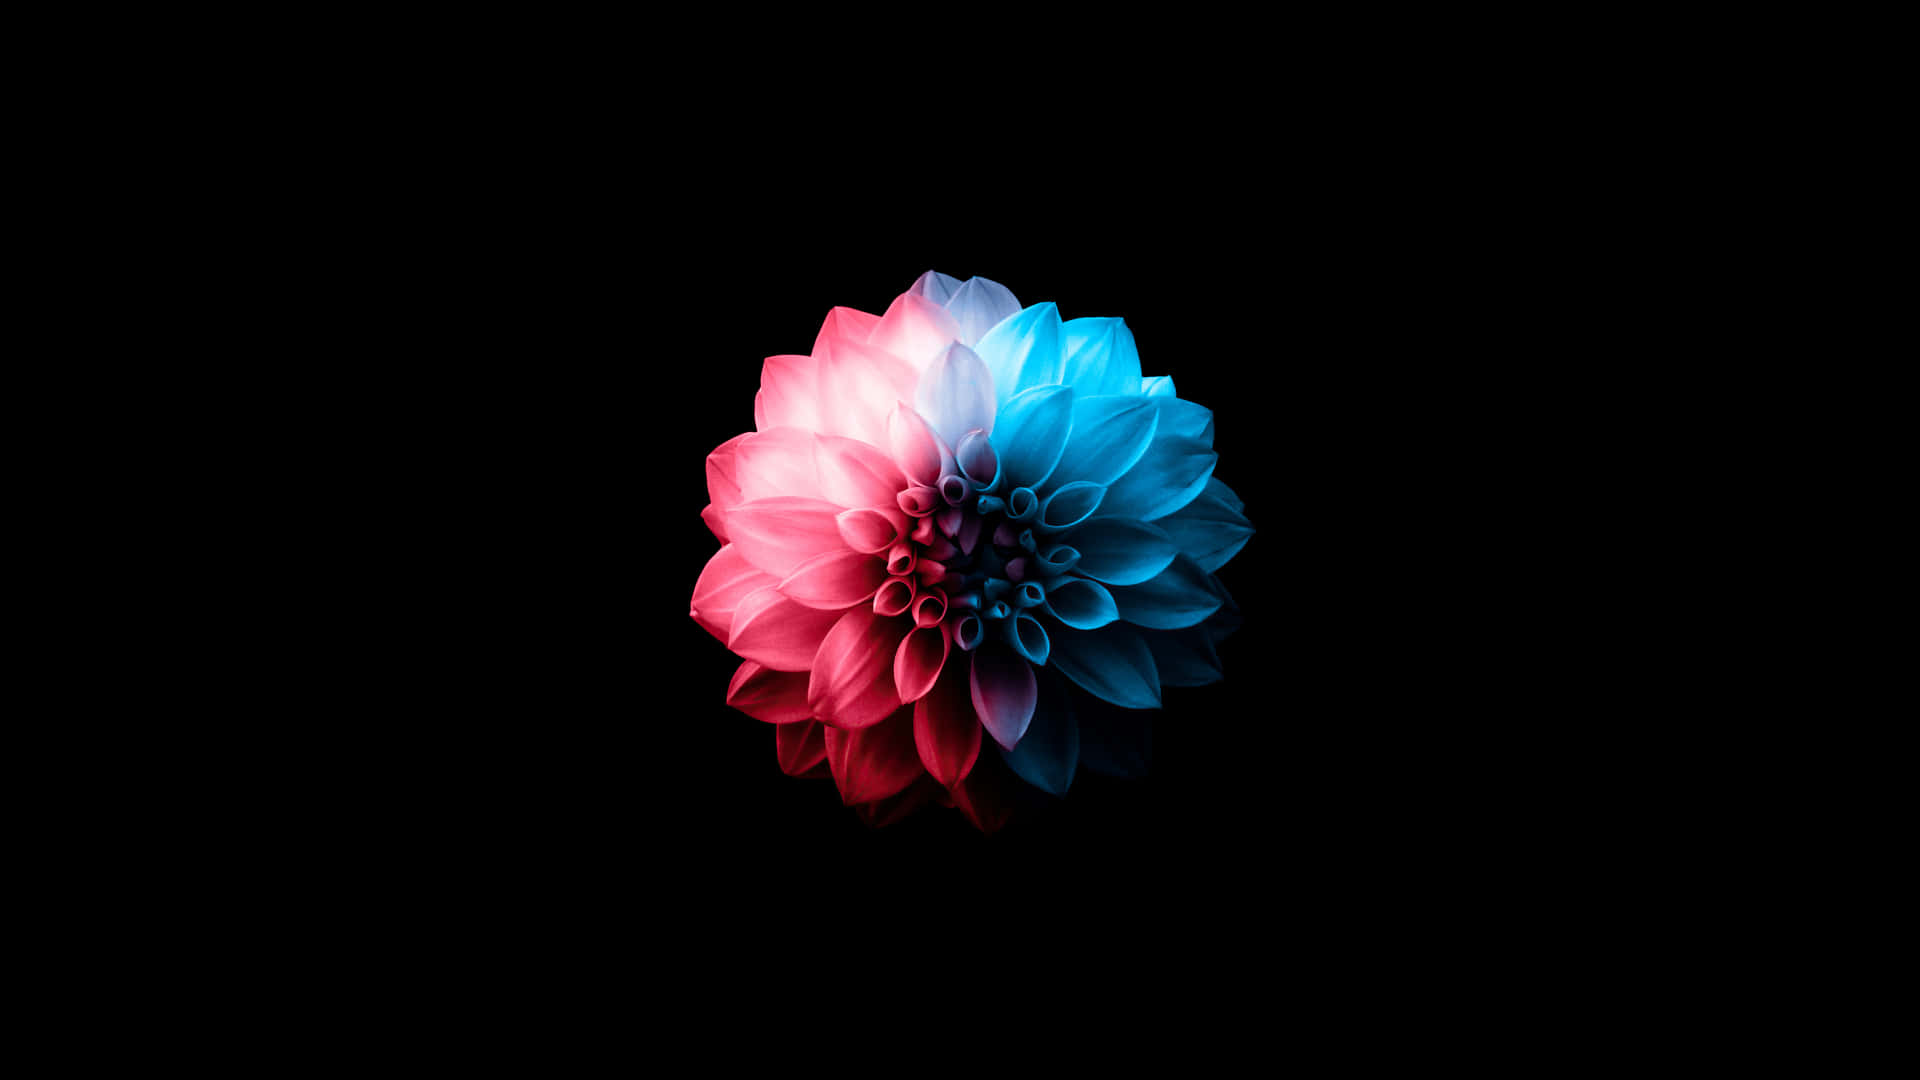 Eineblume Mit Blauen Und Pinken Farben Auf Einem Schwarzen Hintergrund.